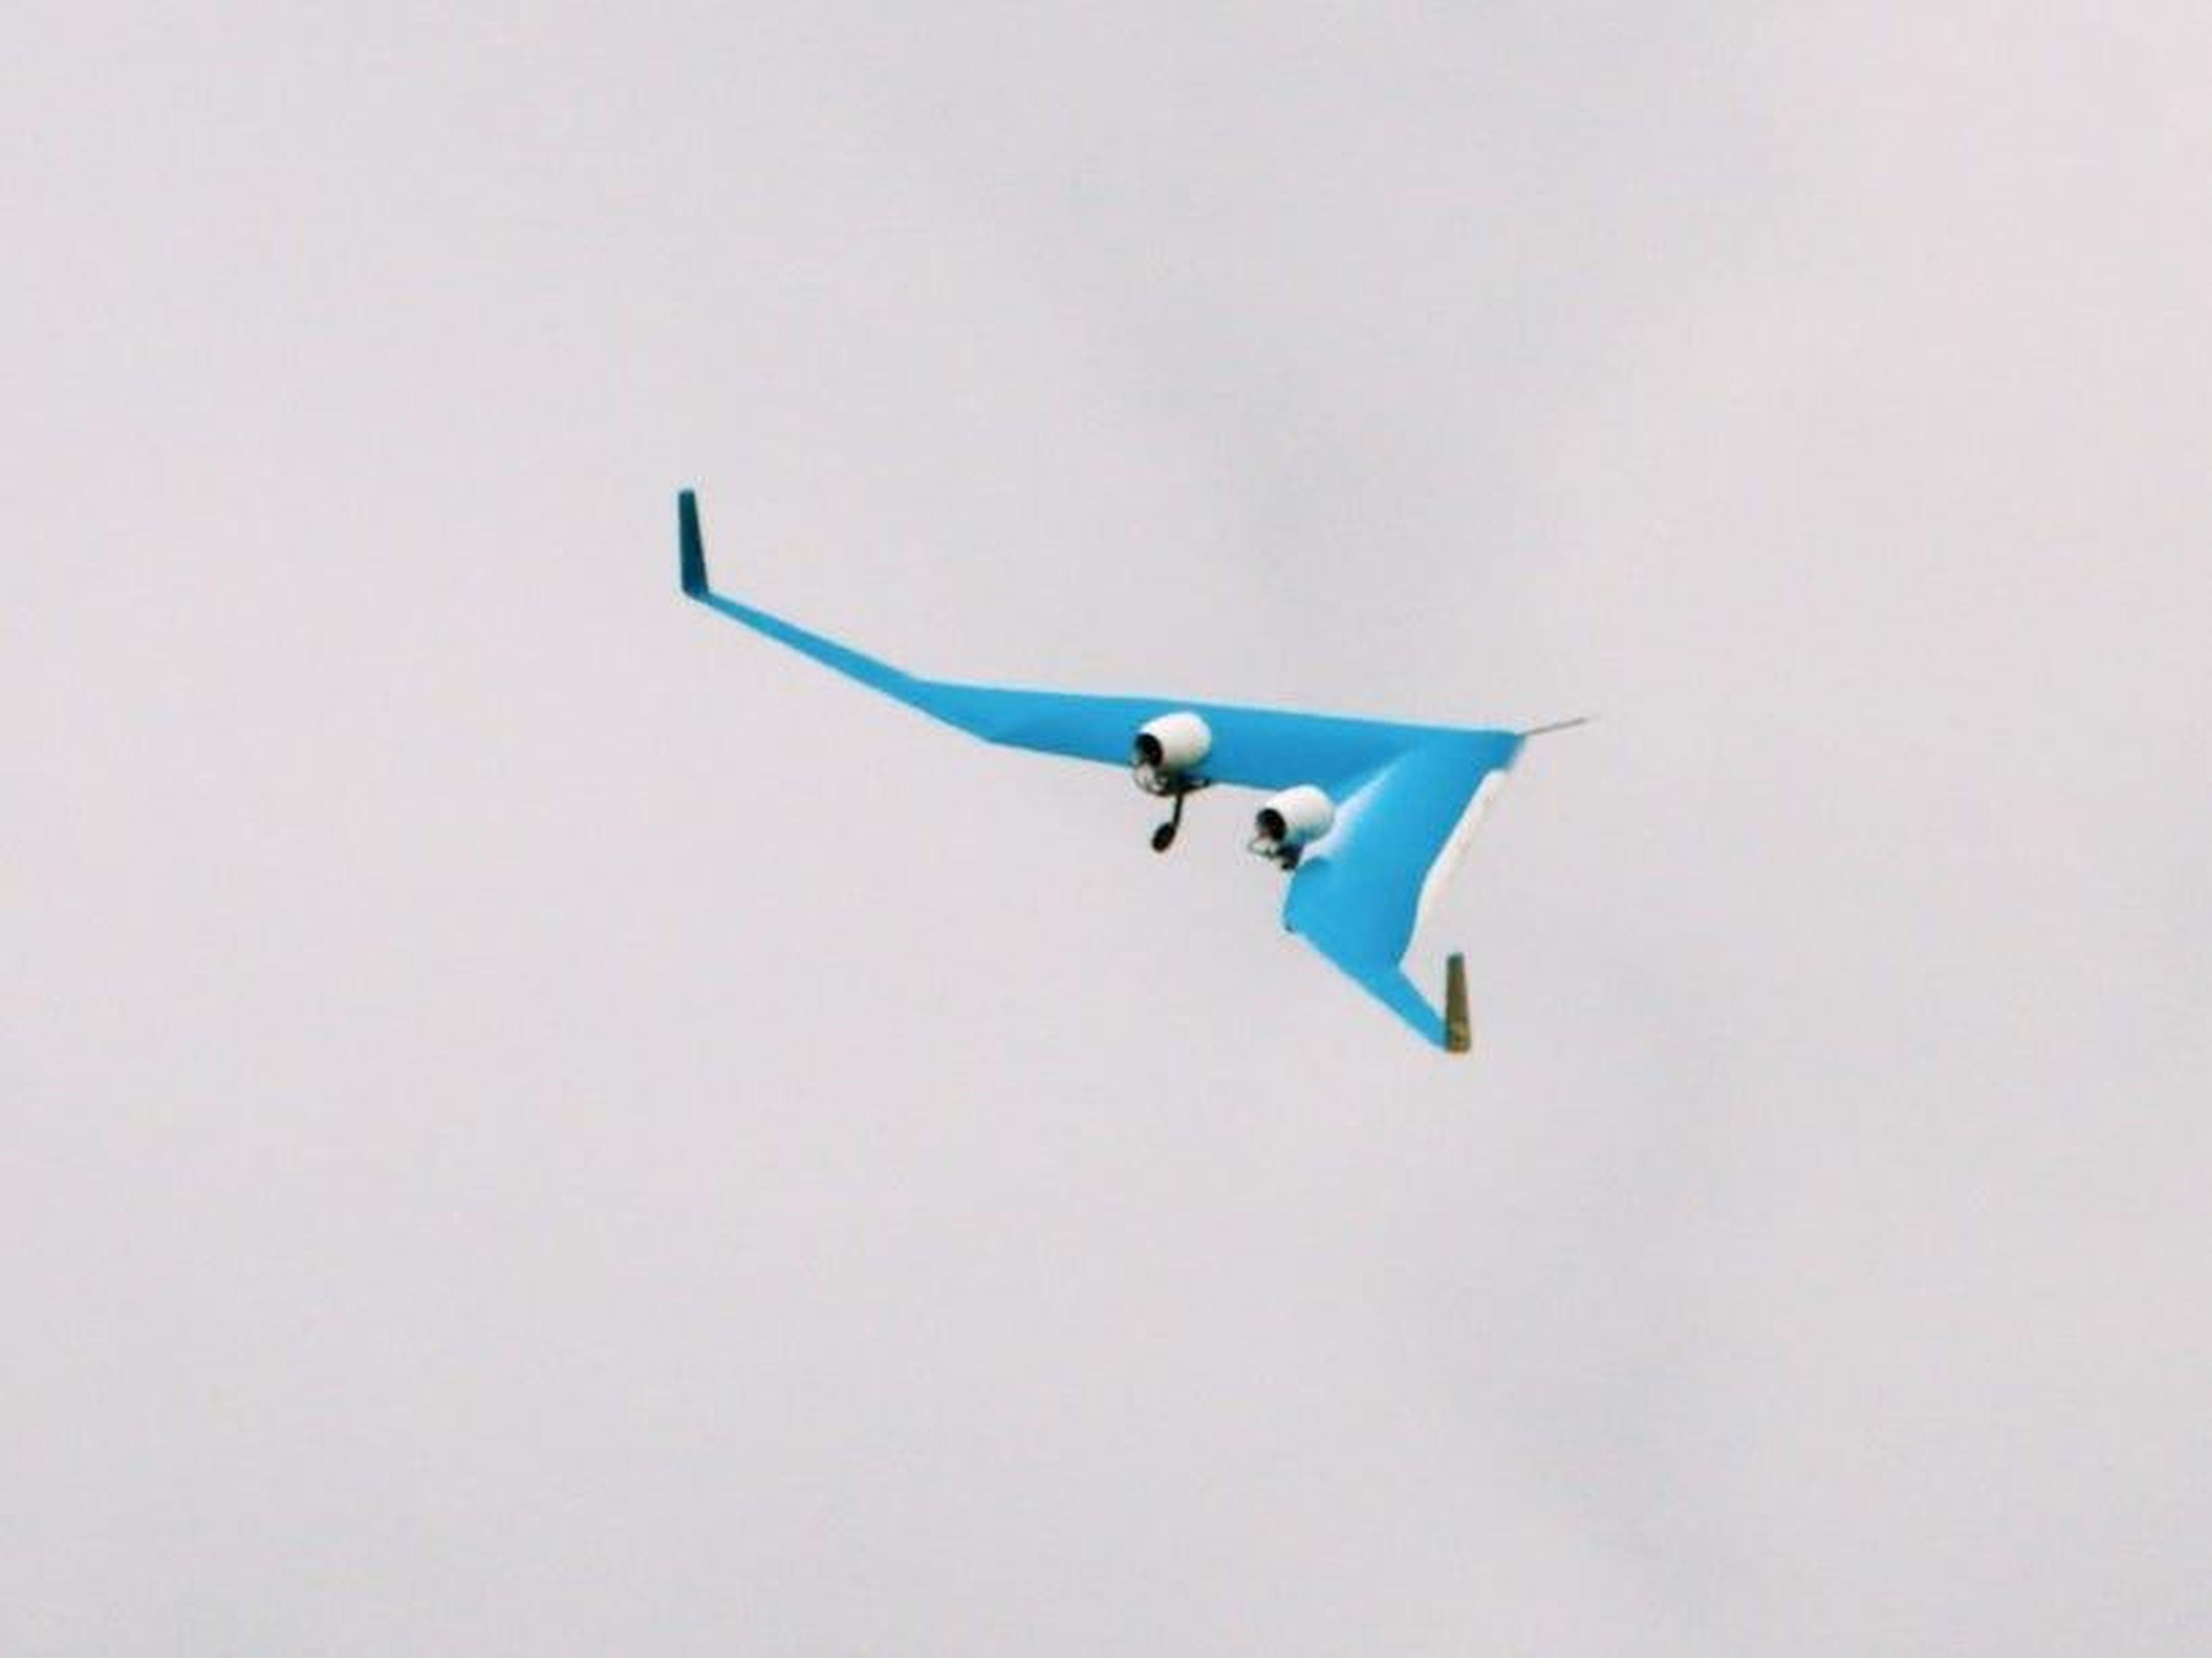 KLM Royal Dutch Airlines' Flying-V prototype. KLM Royal Dutch Airlines